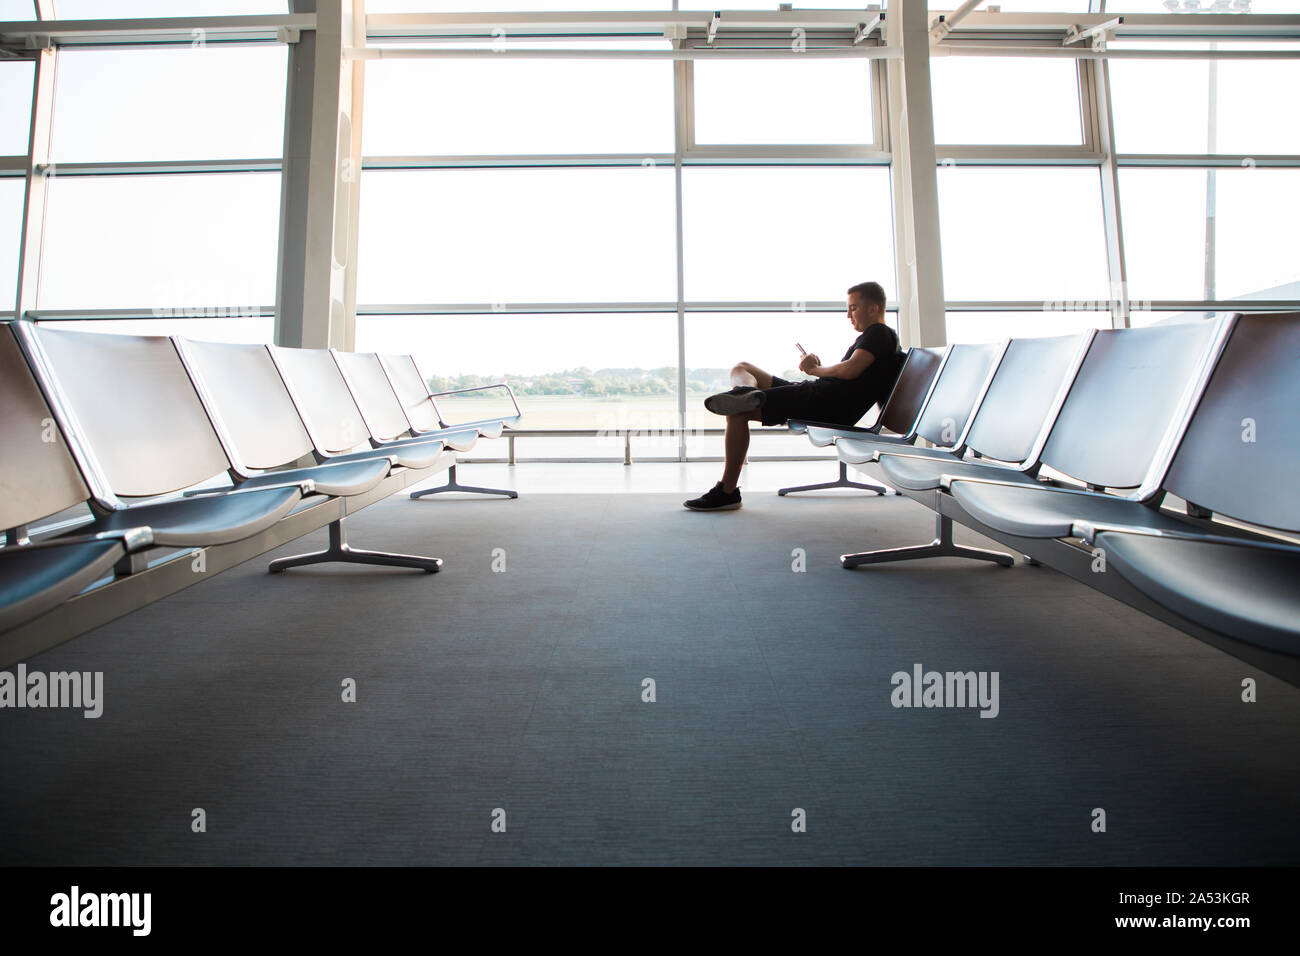 Porträt der jungen gutaussehenden Mann legere style Kleidung auf der Bank sitzen in modernen Flughafen Terminal mit Smartphone. Reisende, Anruf, me Stockfoto